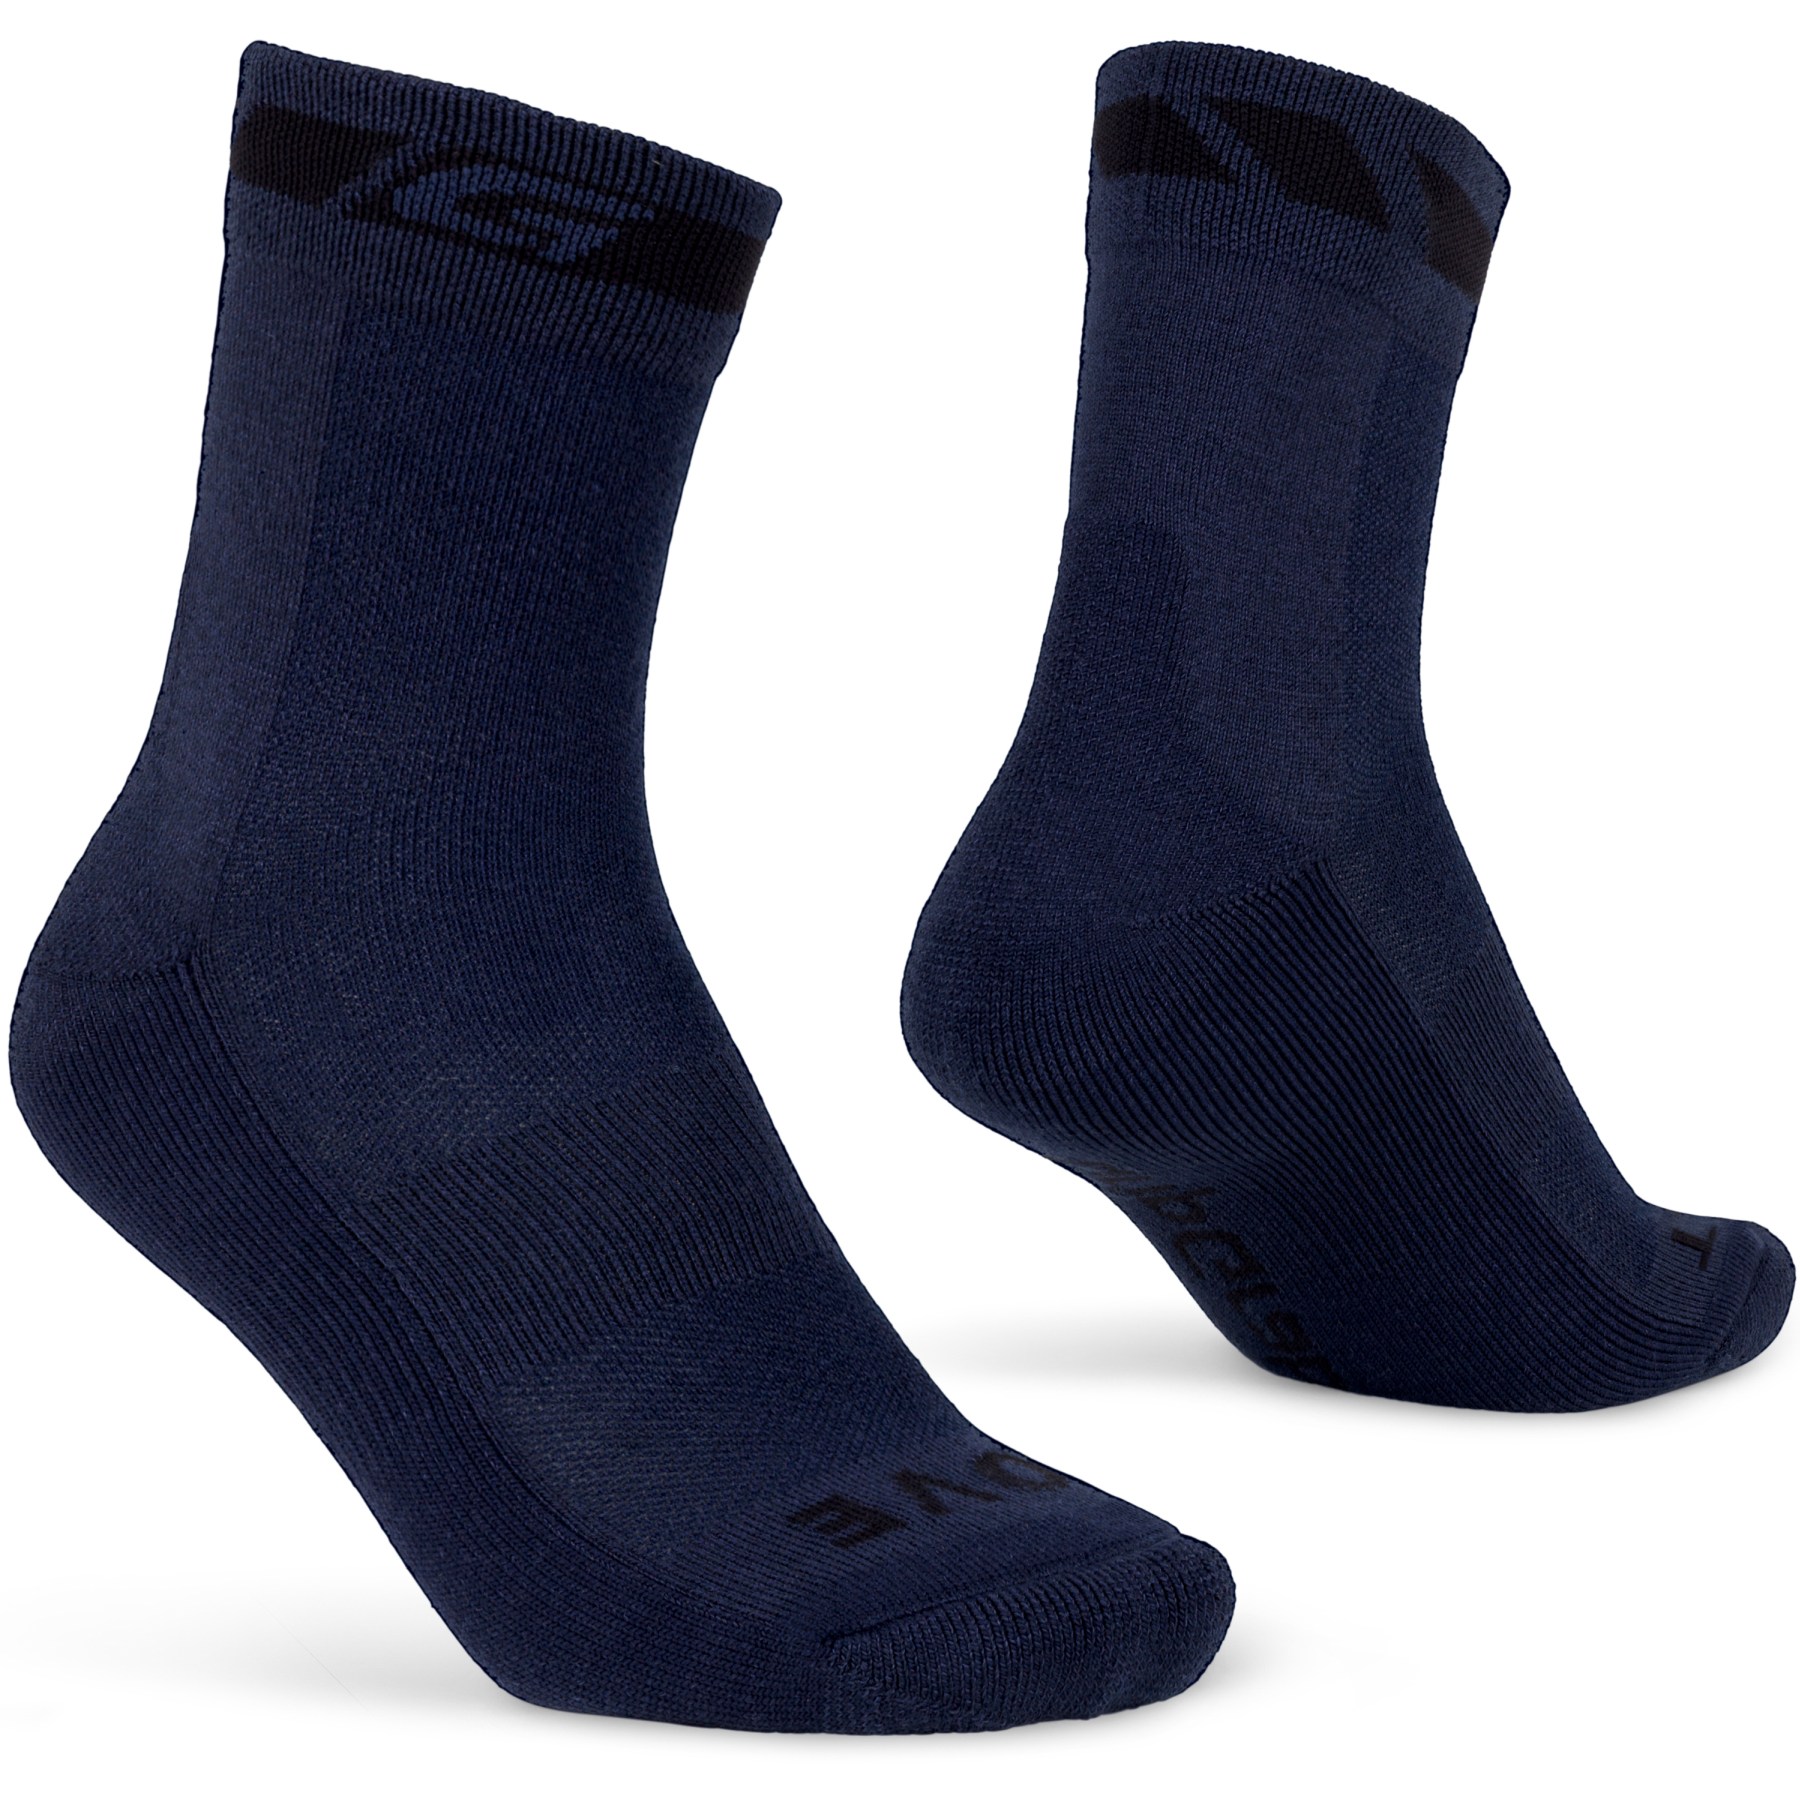 Produktbild von GripGrab Merino Winter Socken - Navy Blue